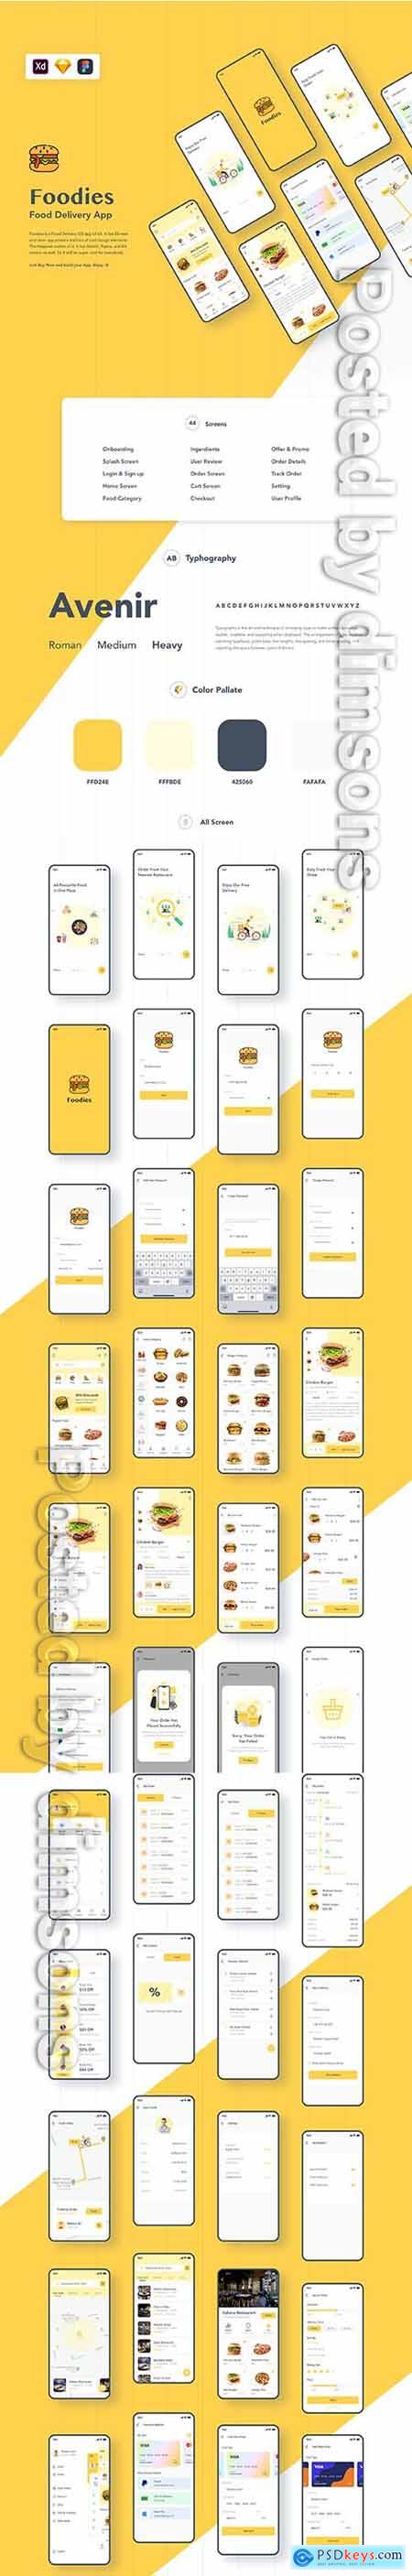 Foodies- Food ordering & delivery IOS app UI kit